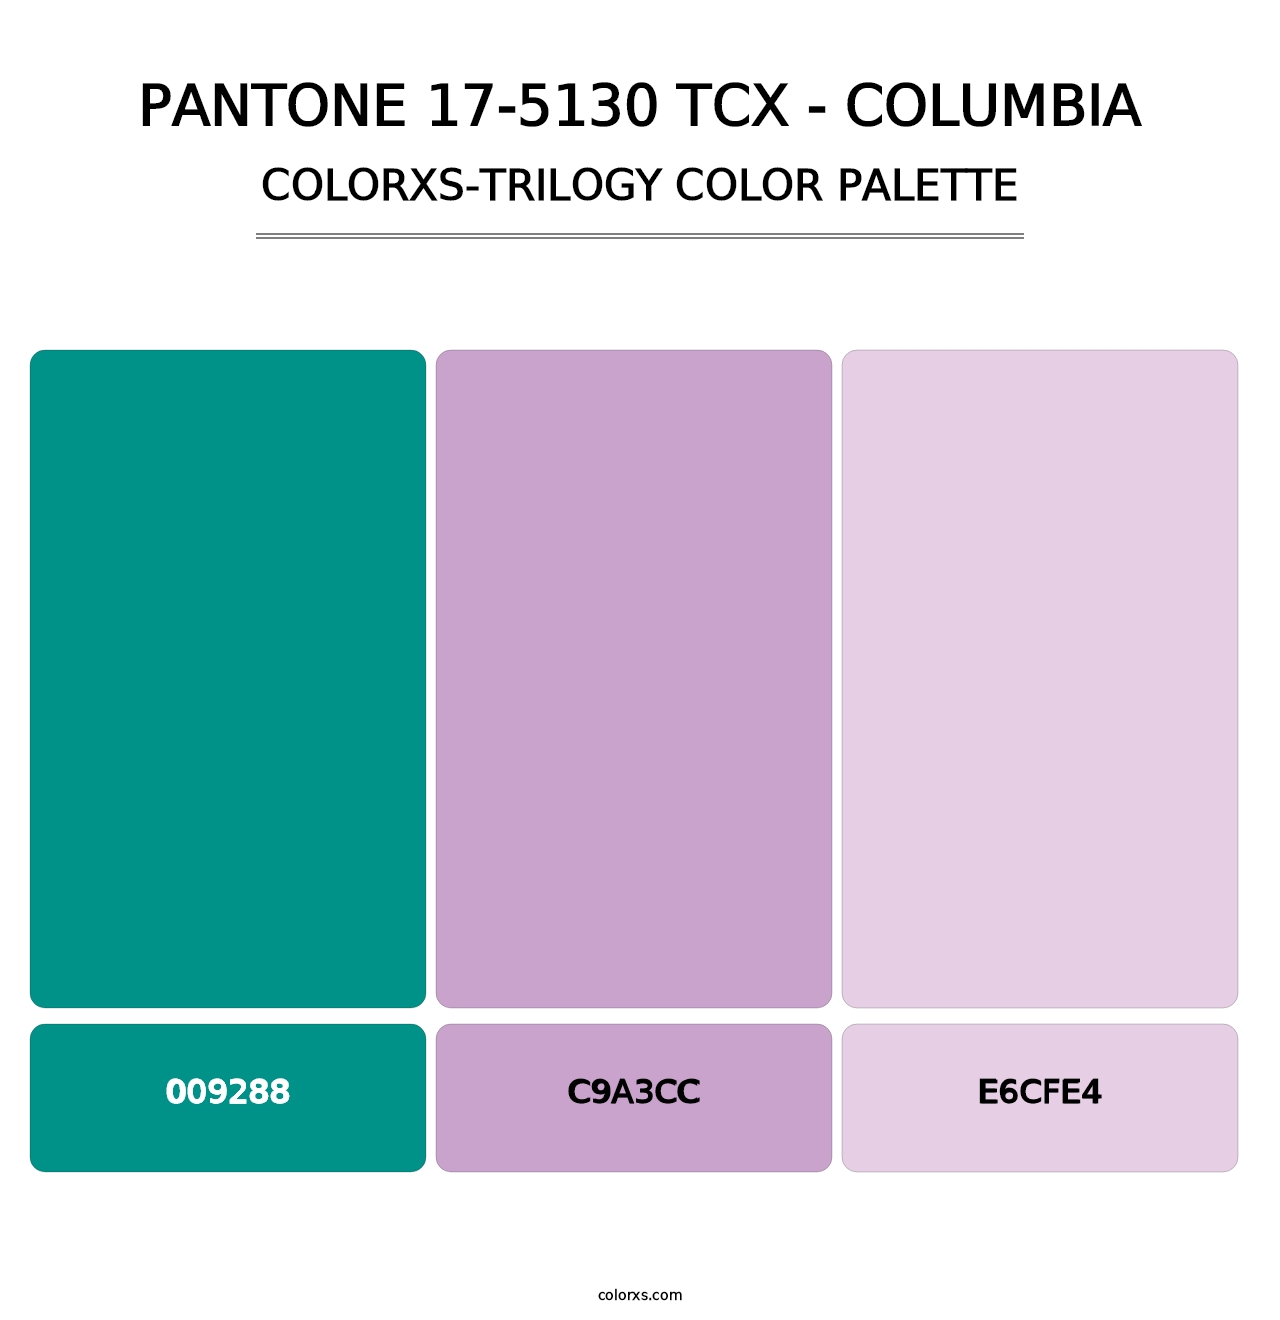 PANTONE 17-5130 TCX - Columbia - Colorxs Trilogy Palette